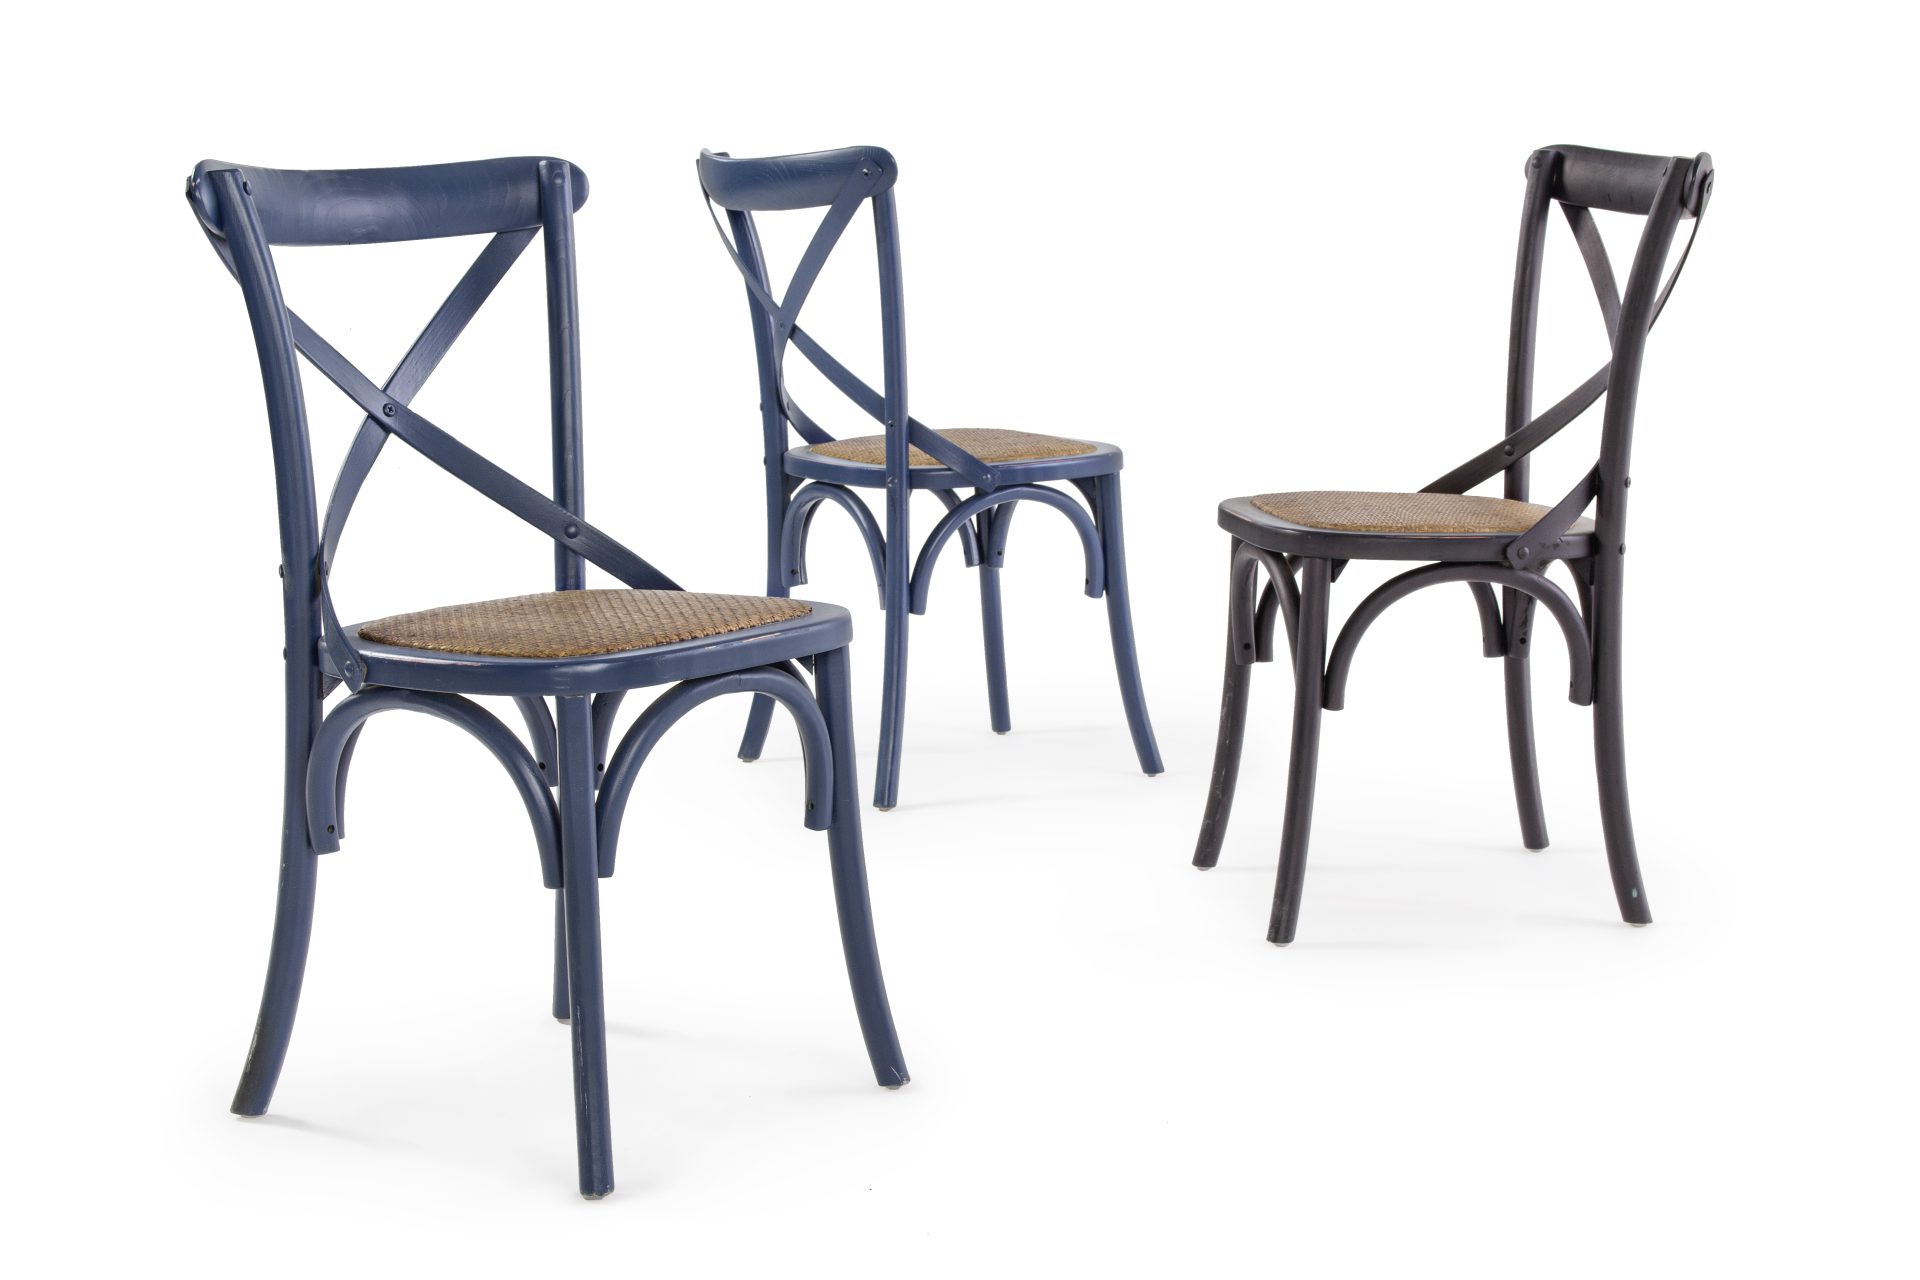 Der Stuhl Cross überzeugt mit seinem klassischen Design. Gefertigt wurde der Stuhl aus Ulmenholz, welches einen blauen Farbton besitzt. Die Sitz- und Rückenfläche ist aus Rattan gefertigt. Die Sitzhöhe beträgt 46 cm.